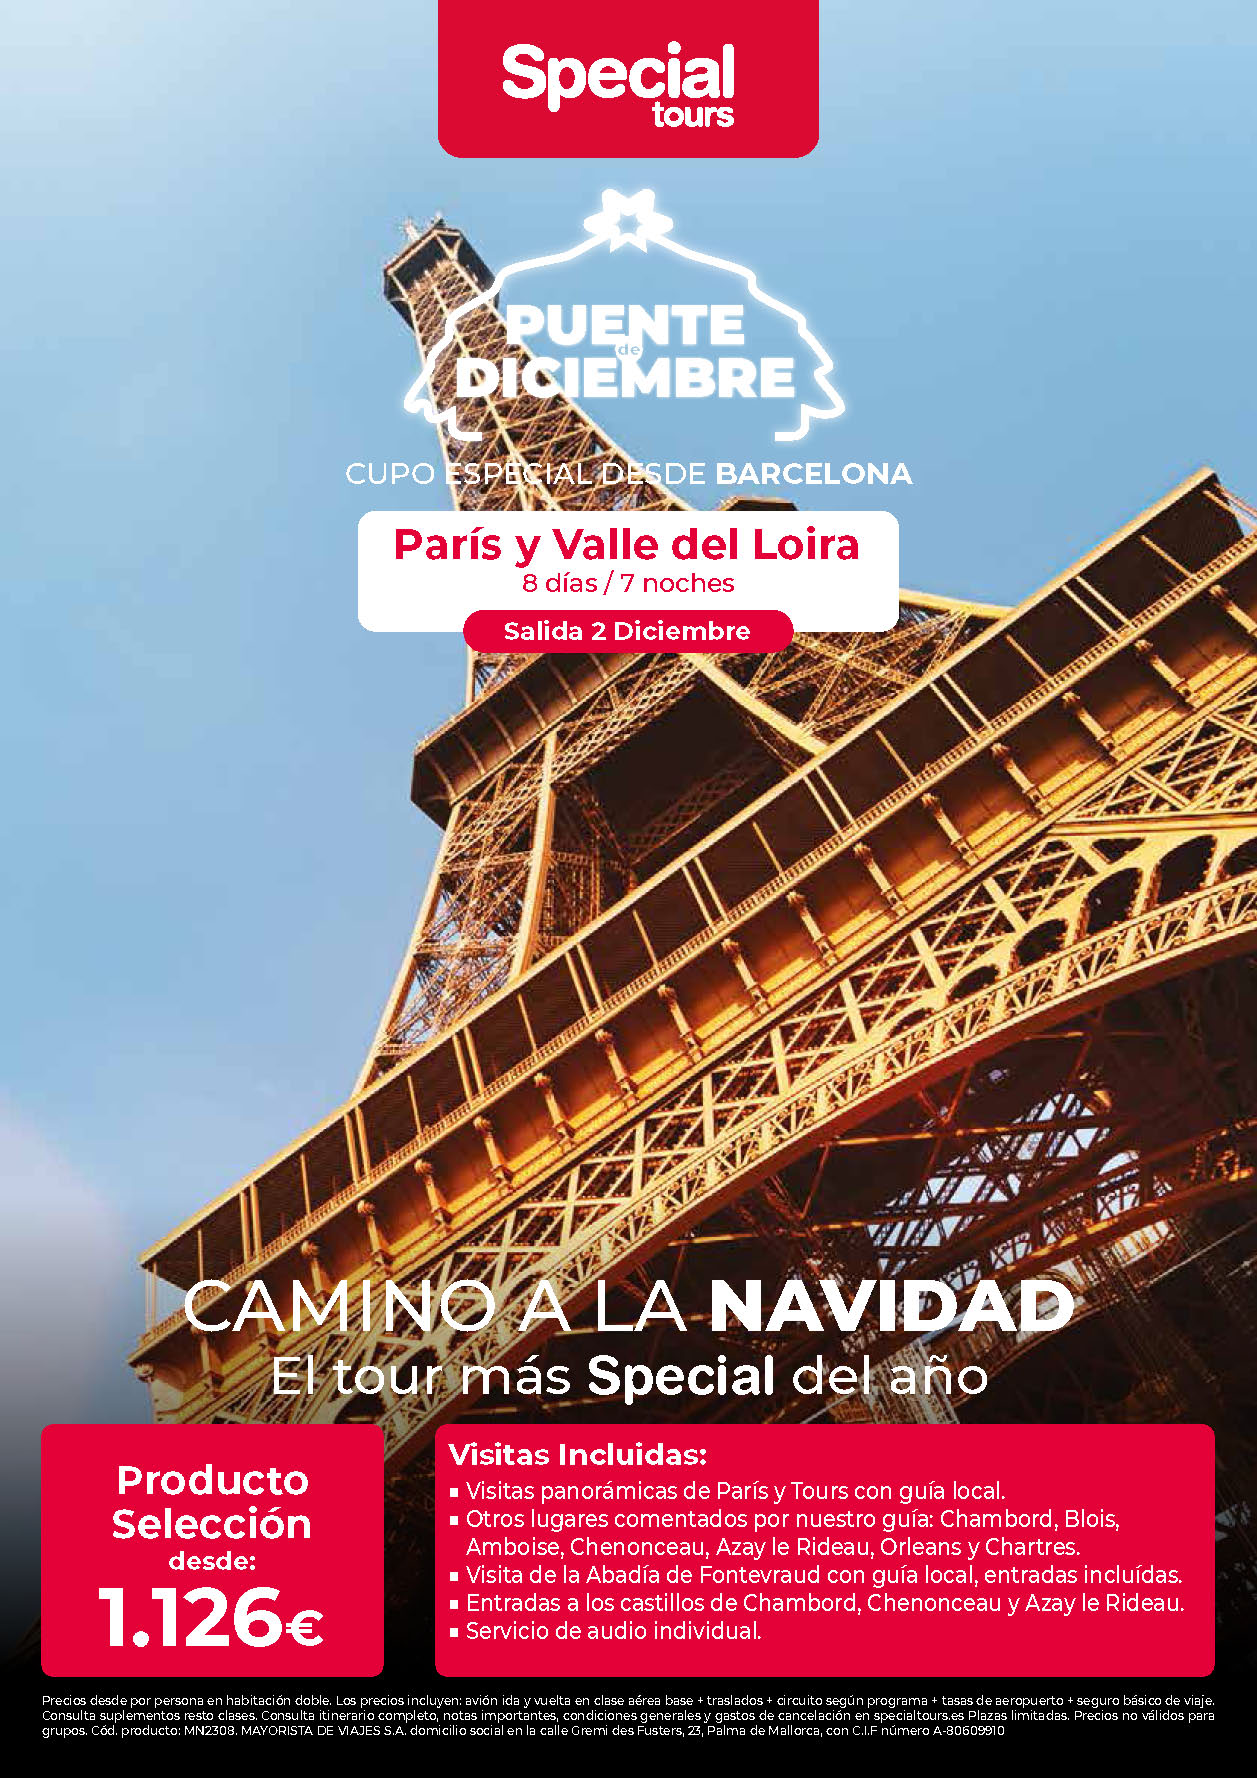 Oferta Special Tours Puente de Diciembre Paris y Valle del Loira 8 dias salida 2 Diciembre vuelo directo desde Barcelona